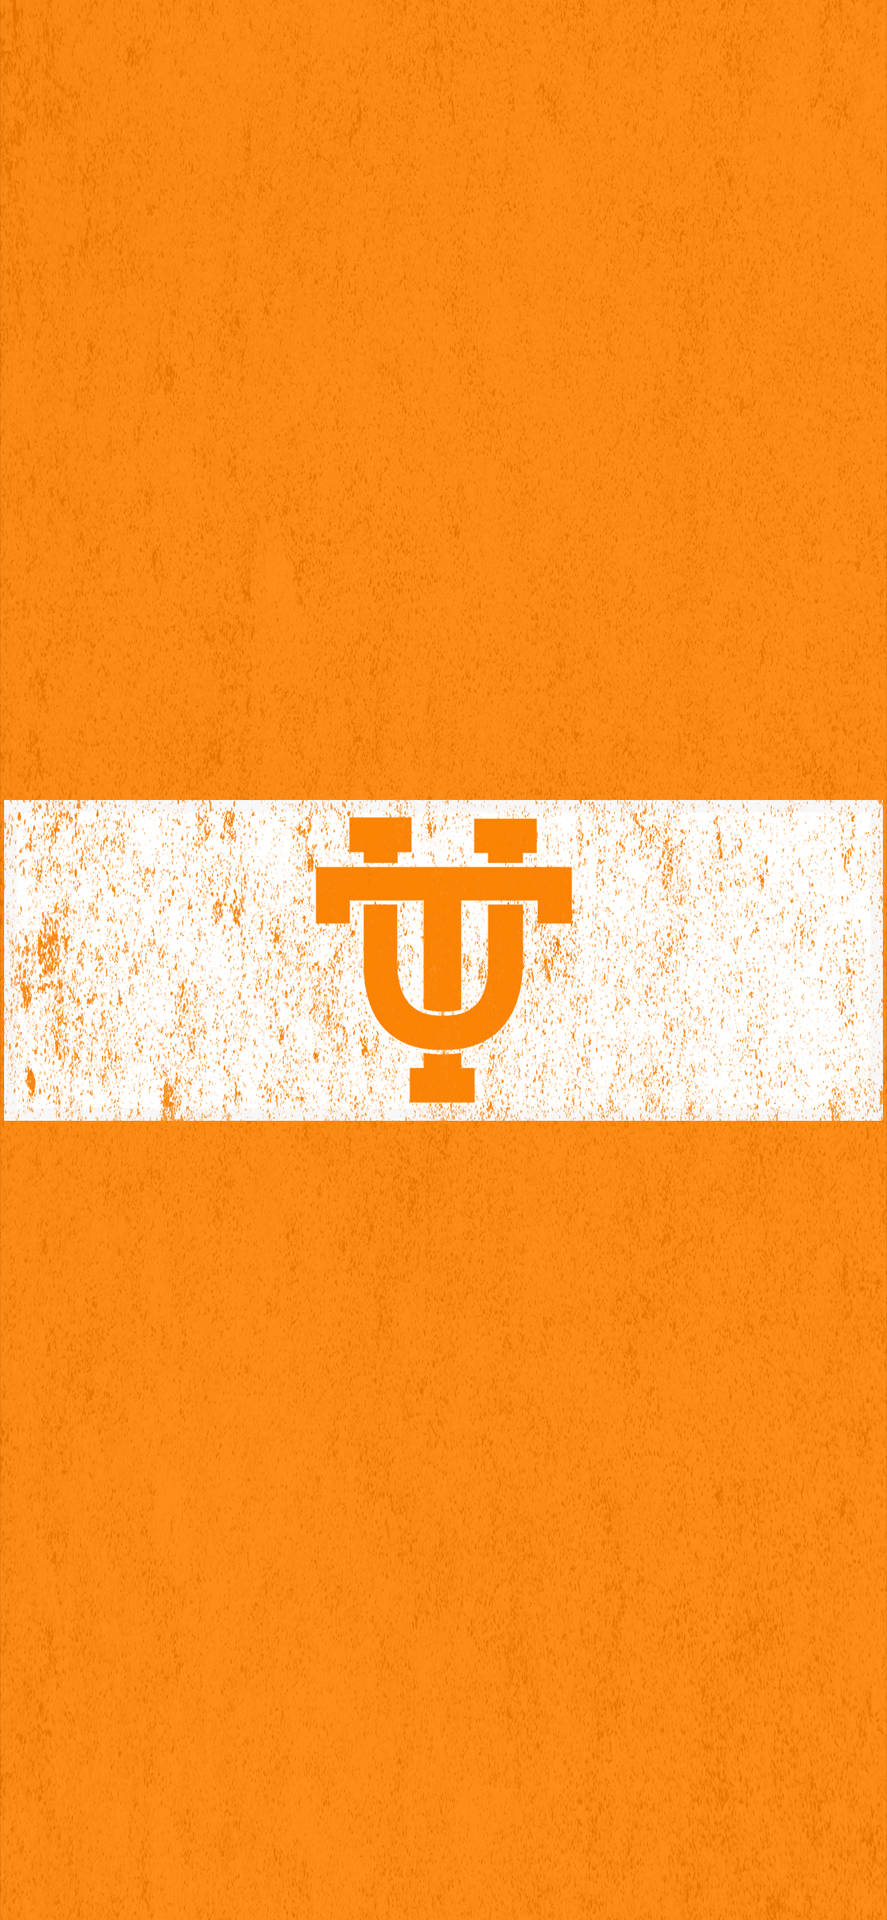 Universitätvon Tennessee Logo Hochformat Wallpaper